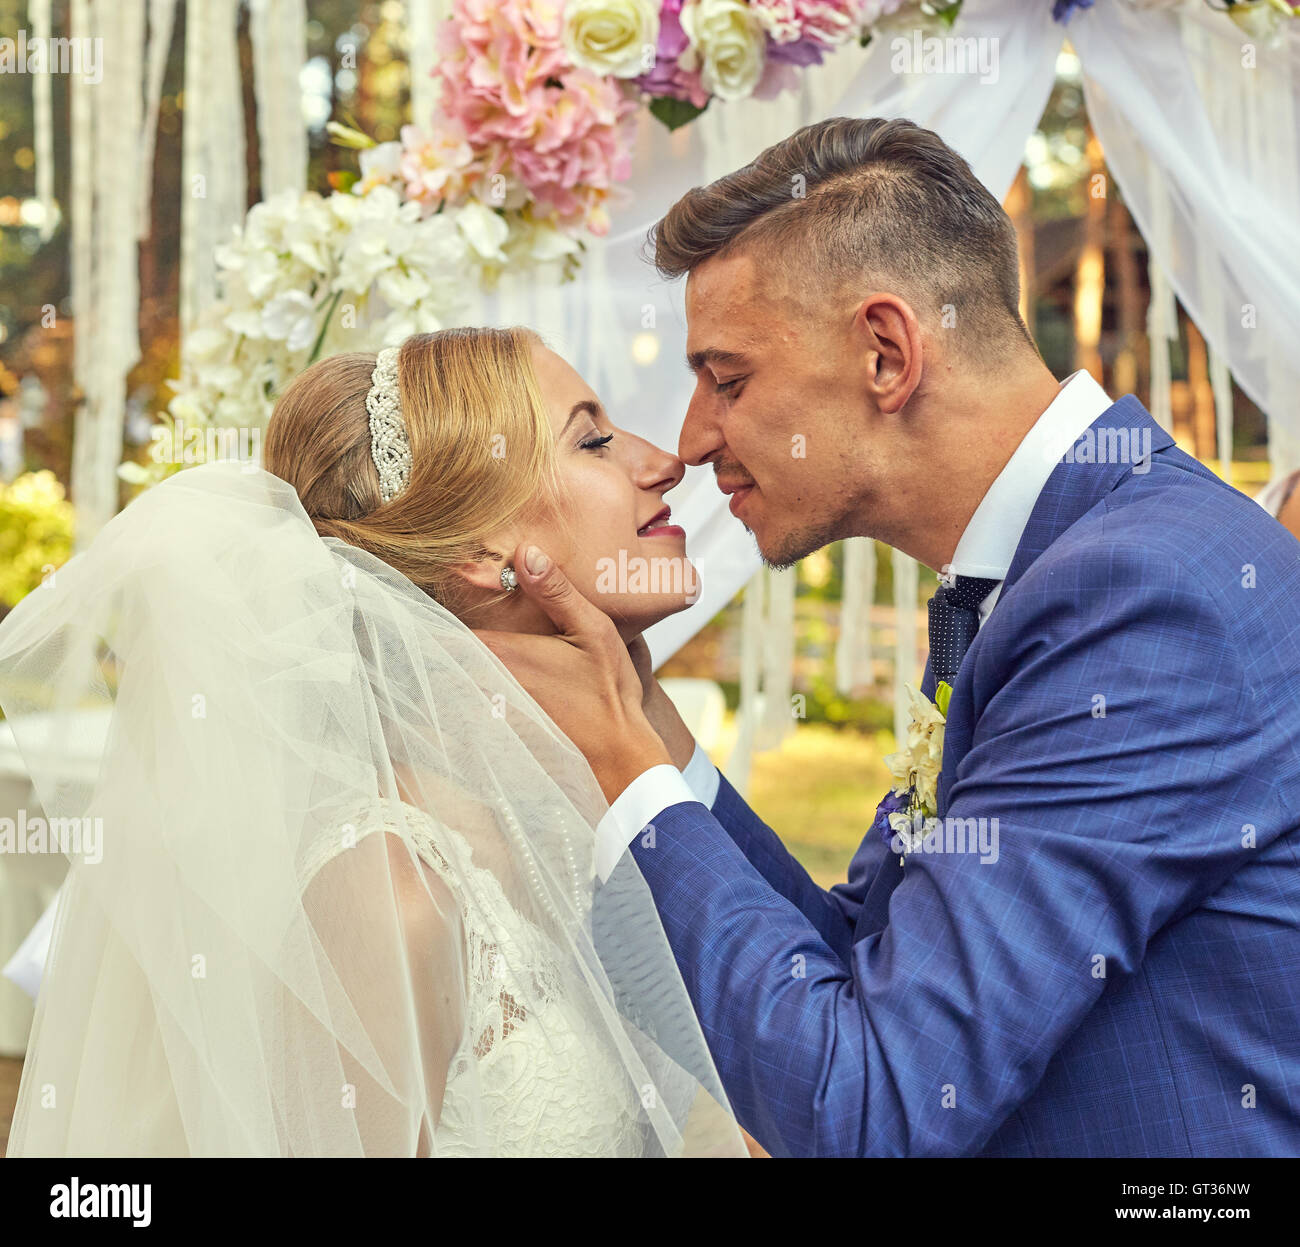 Sposi novelli kissing durante la cerimonia di nozze Foto Stock